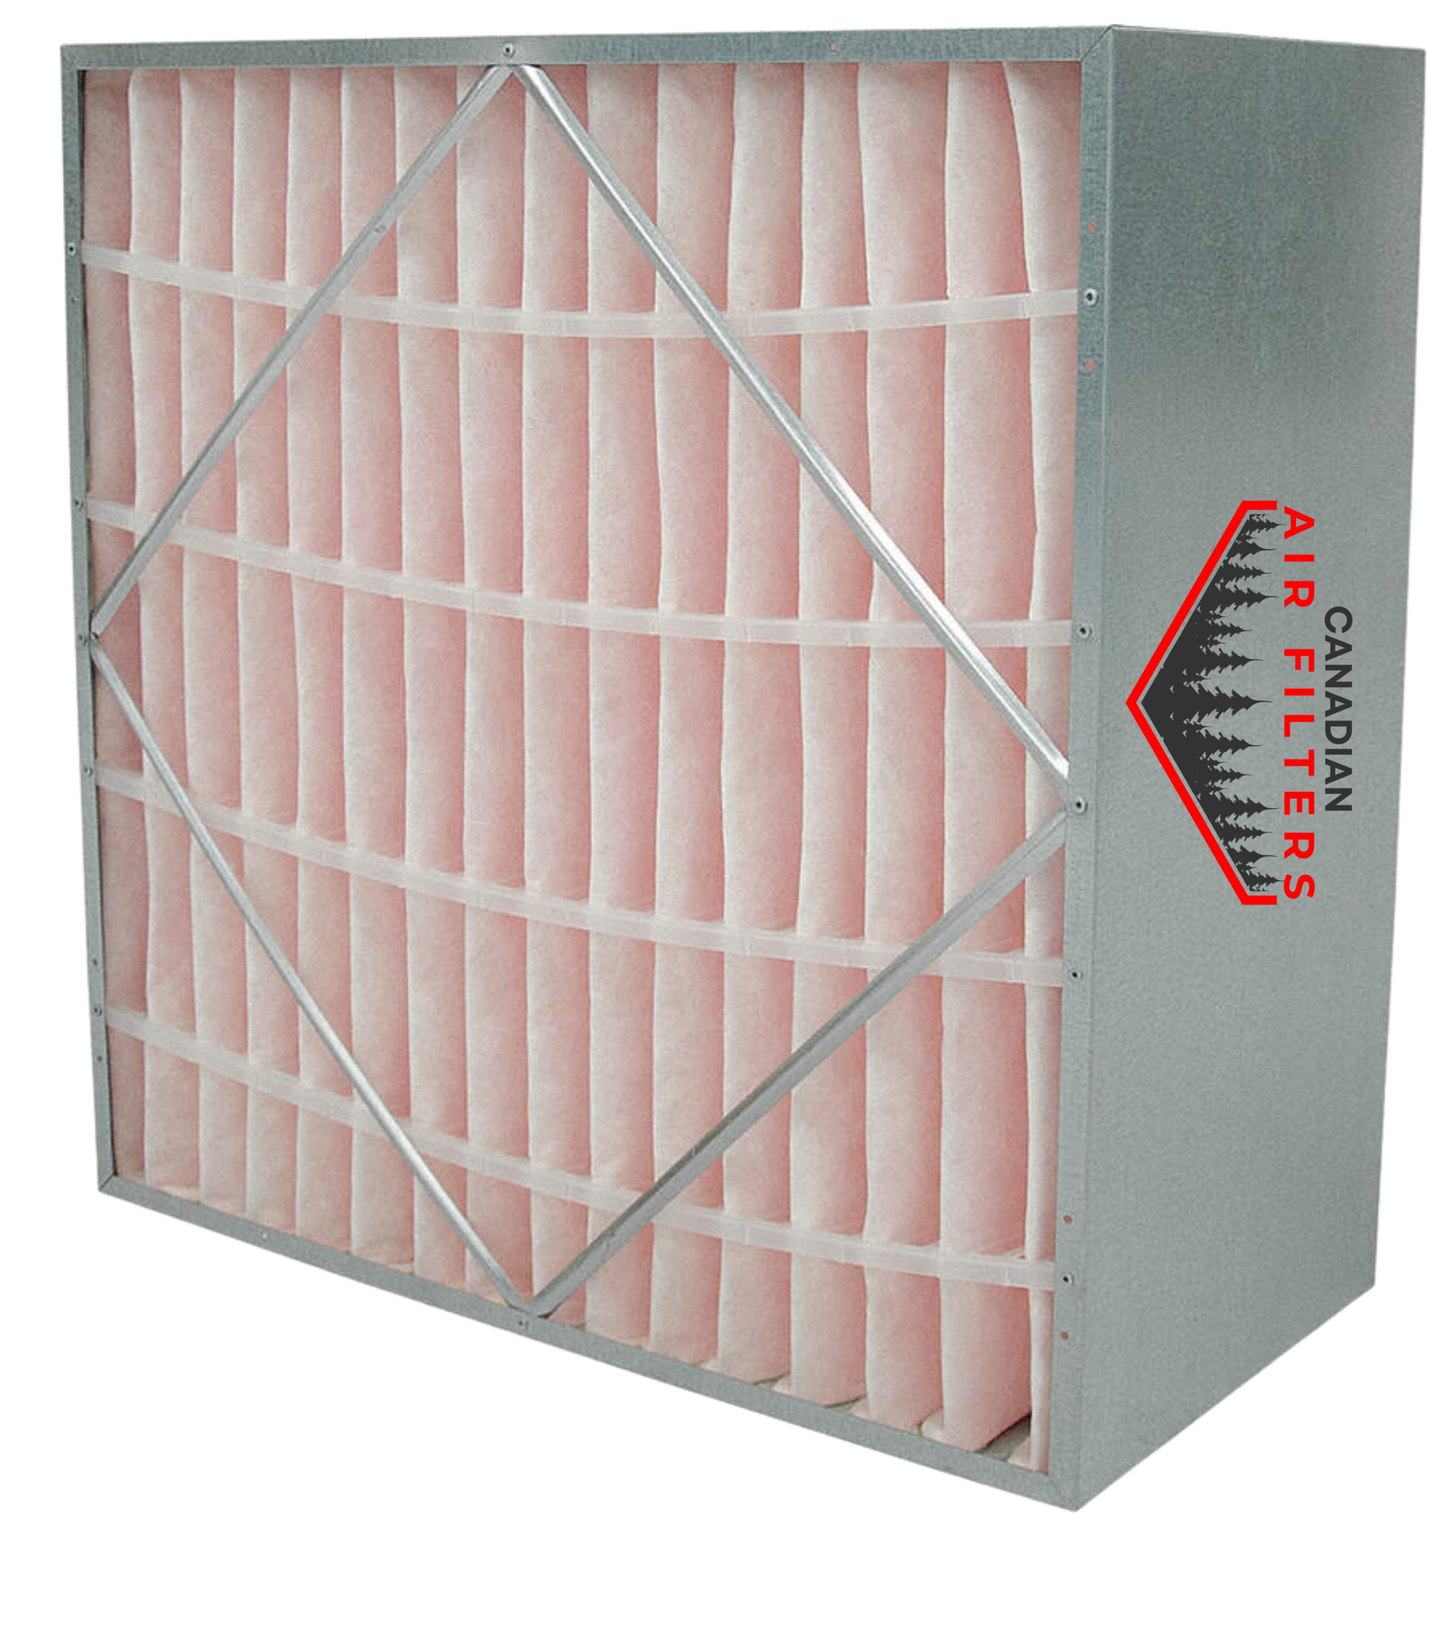 20 x 20 x 12 - Rigid Cell Air Filters Box Style - Merv 13 (Each)